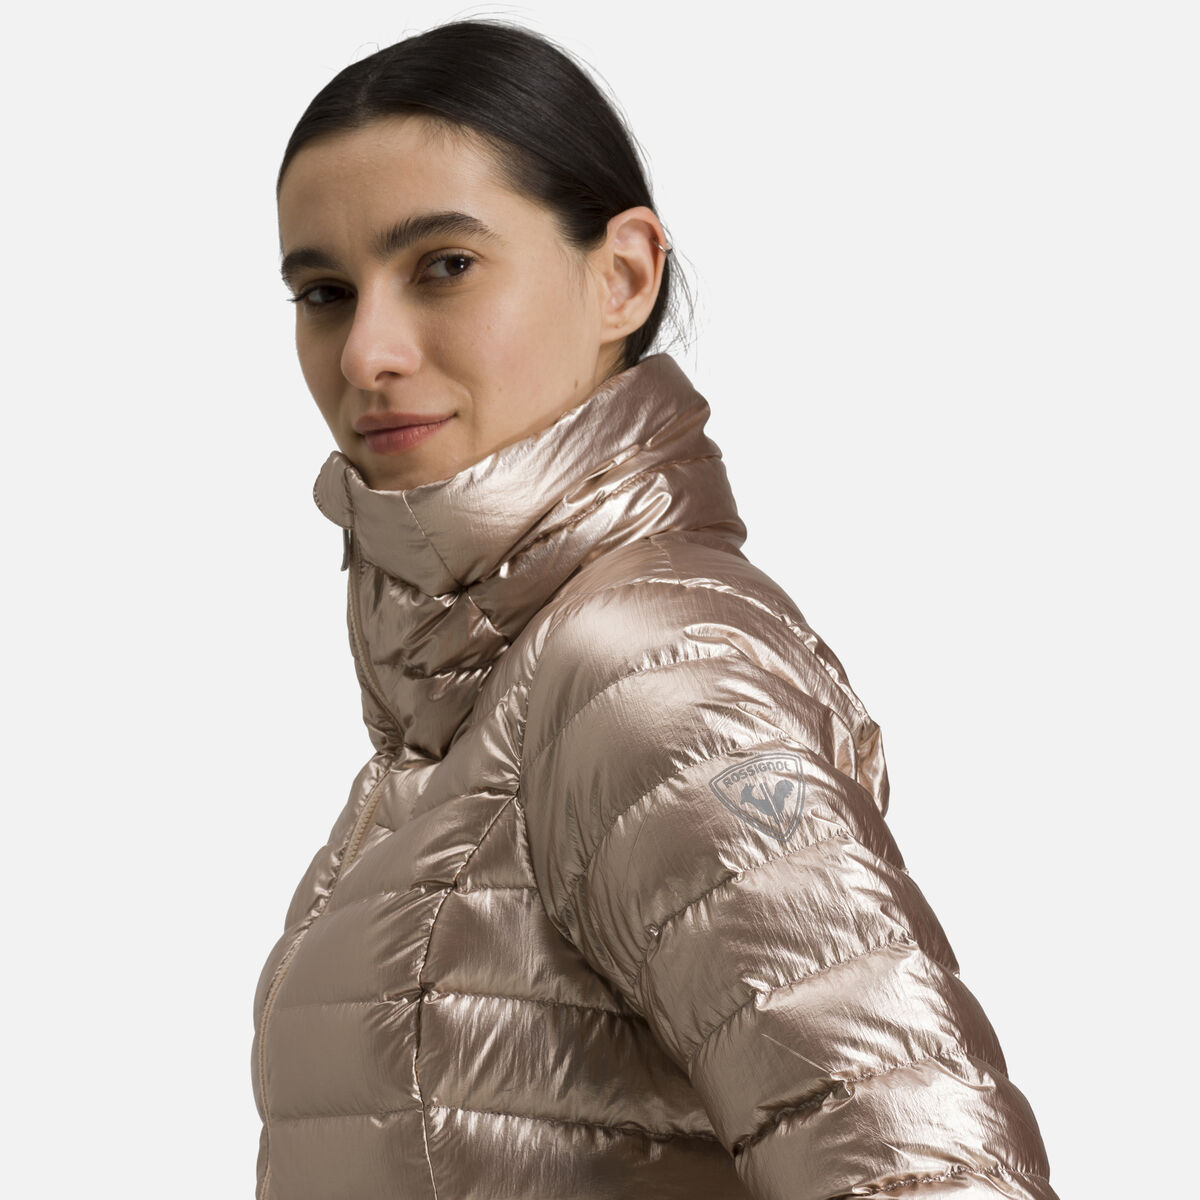 Women's Classic Light Basalt Jacket